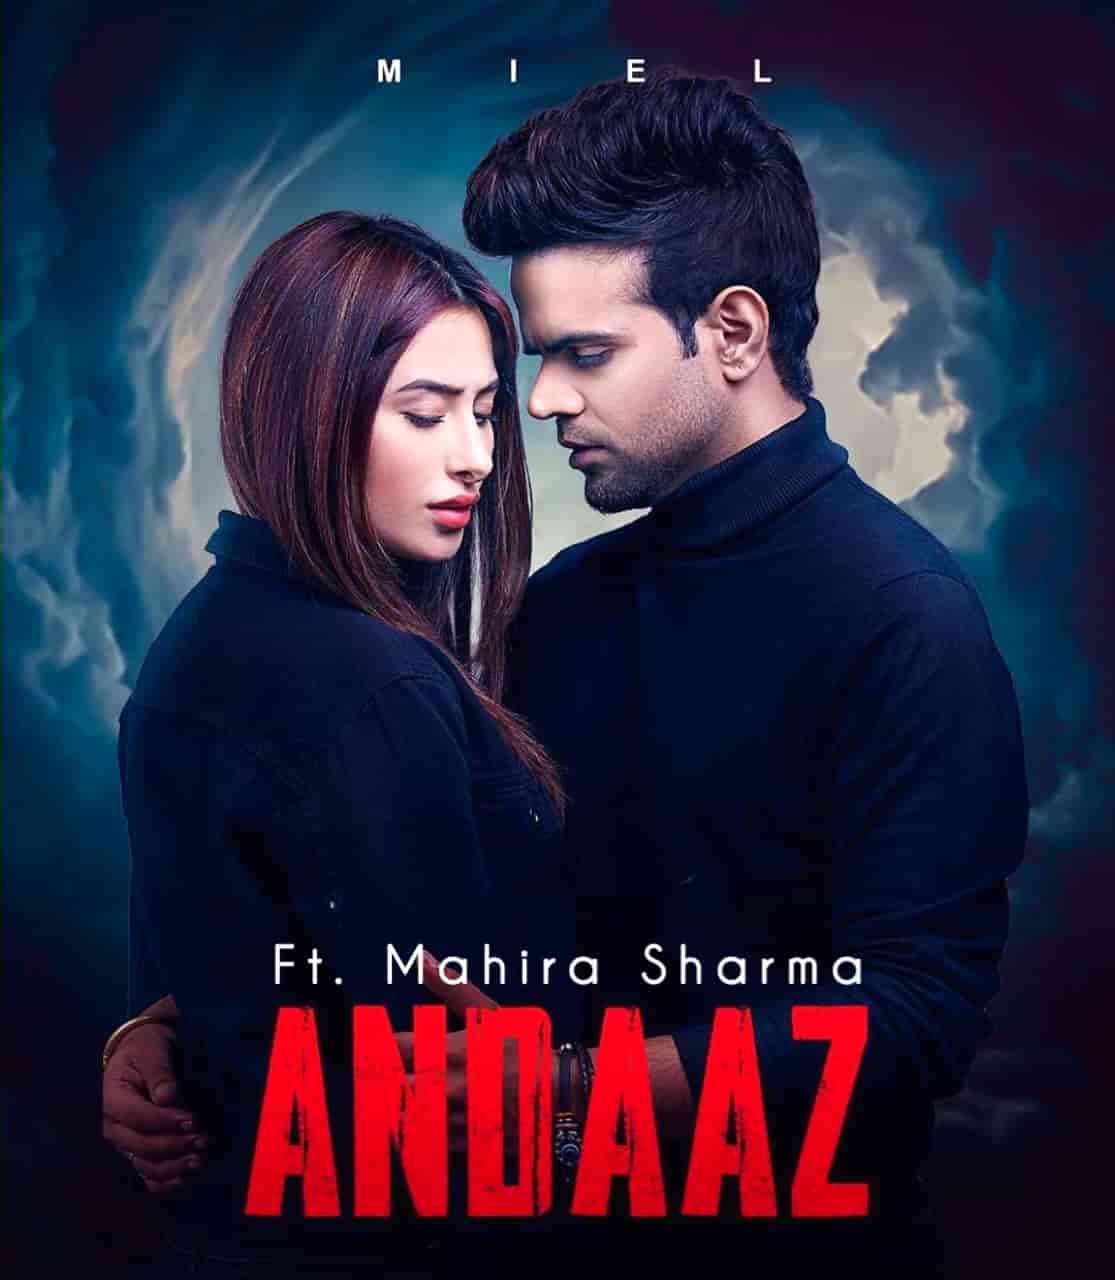 Andaaz Puniabi Song Image Features Miel and Mahira Sharma